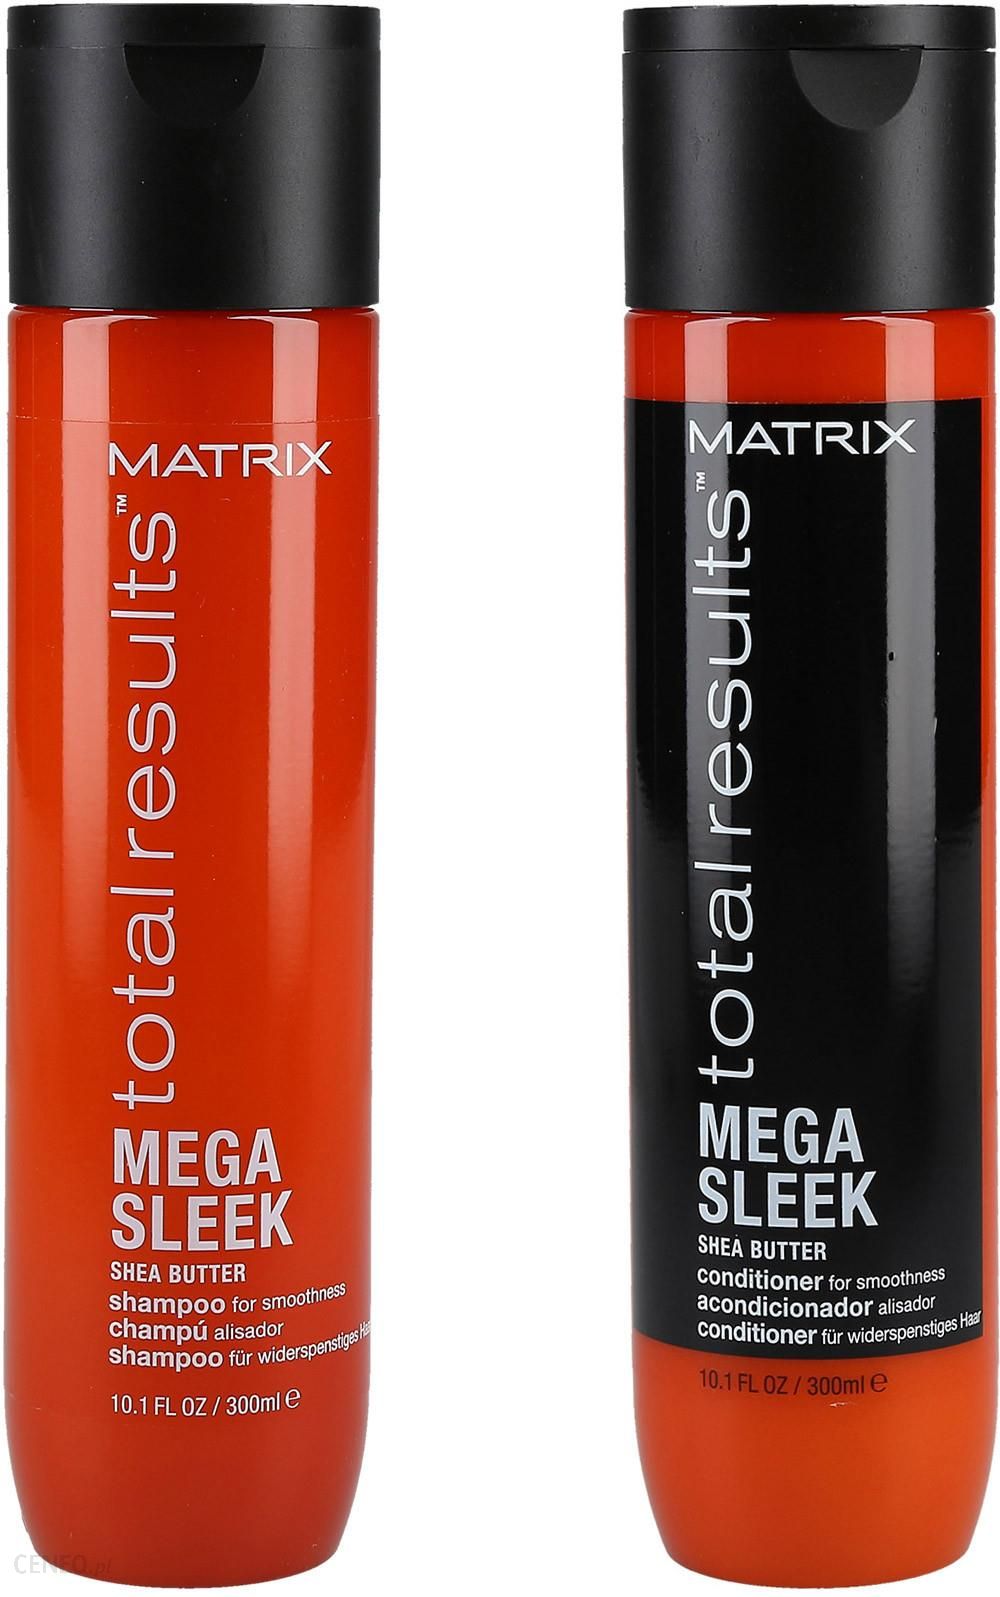 matrix mega sleek szampon ceneo